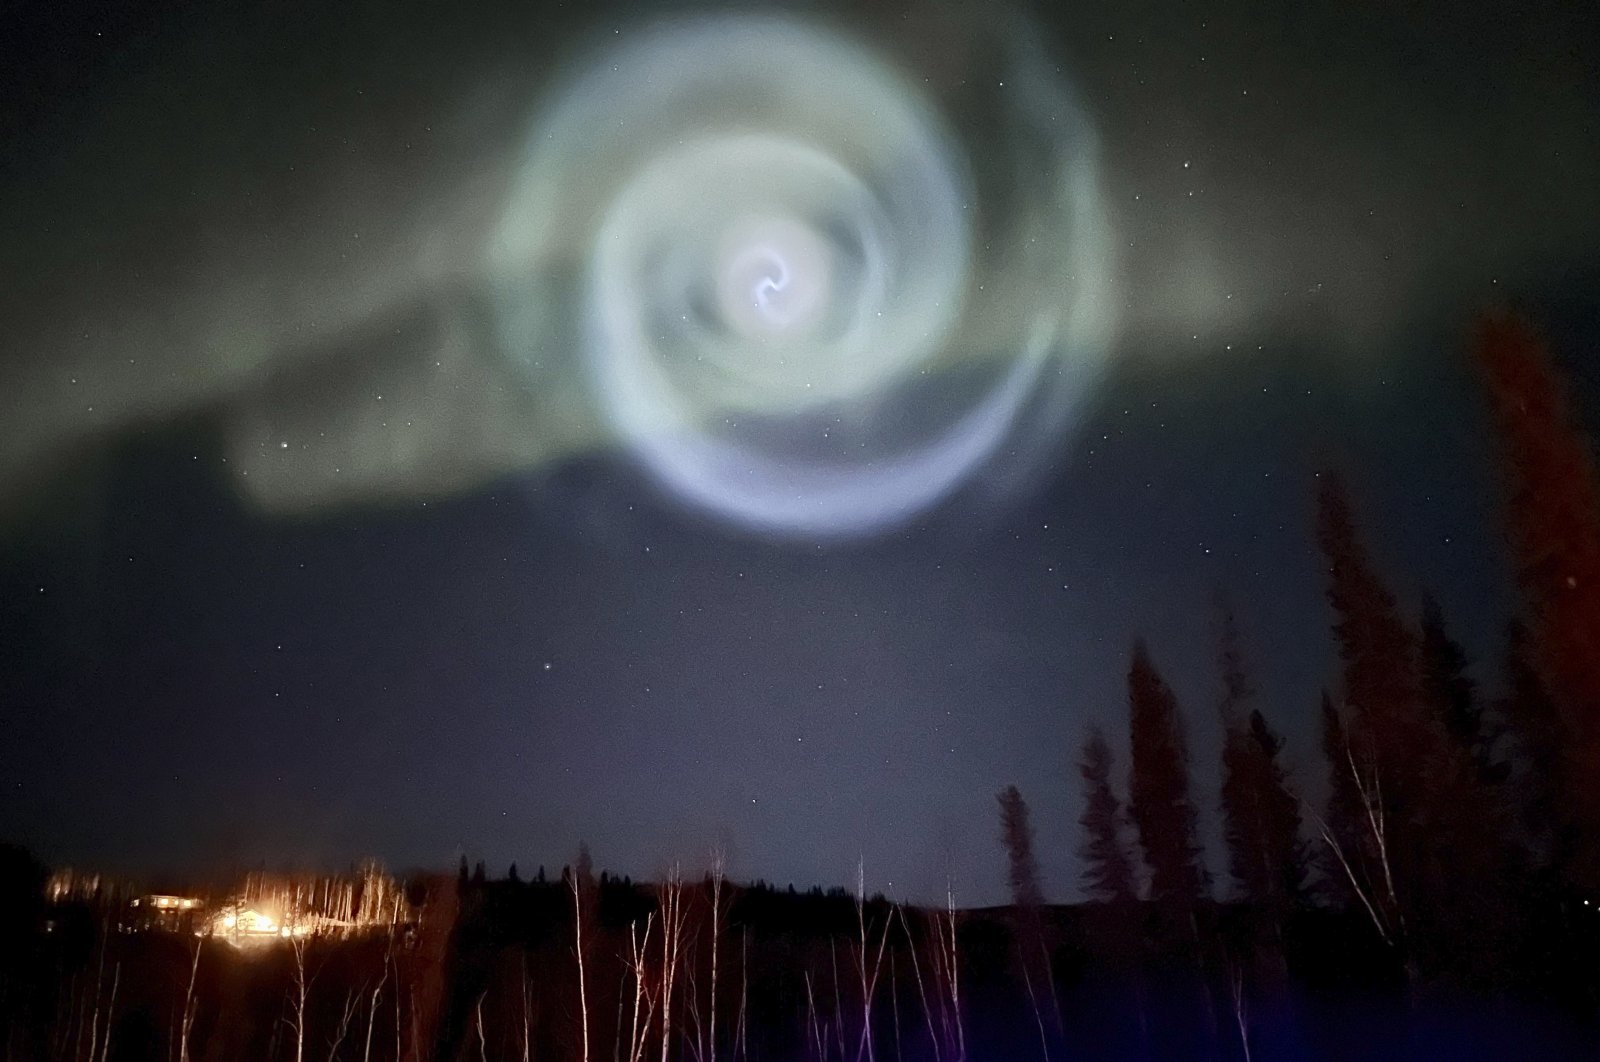 Spiral alien mengejutkan para pencari cahaya utara di malam Alaska